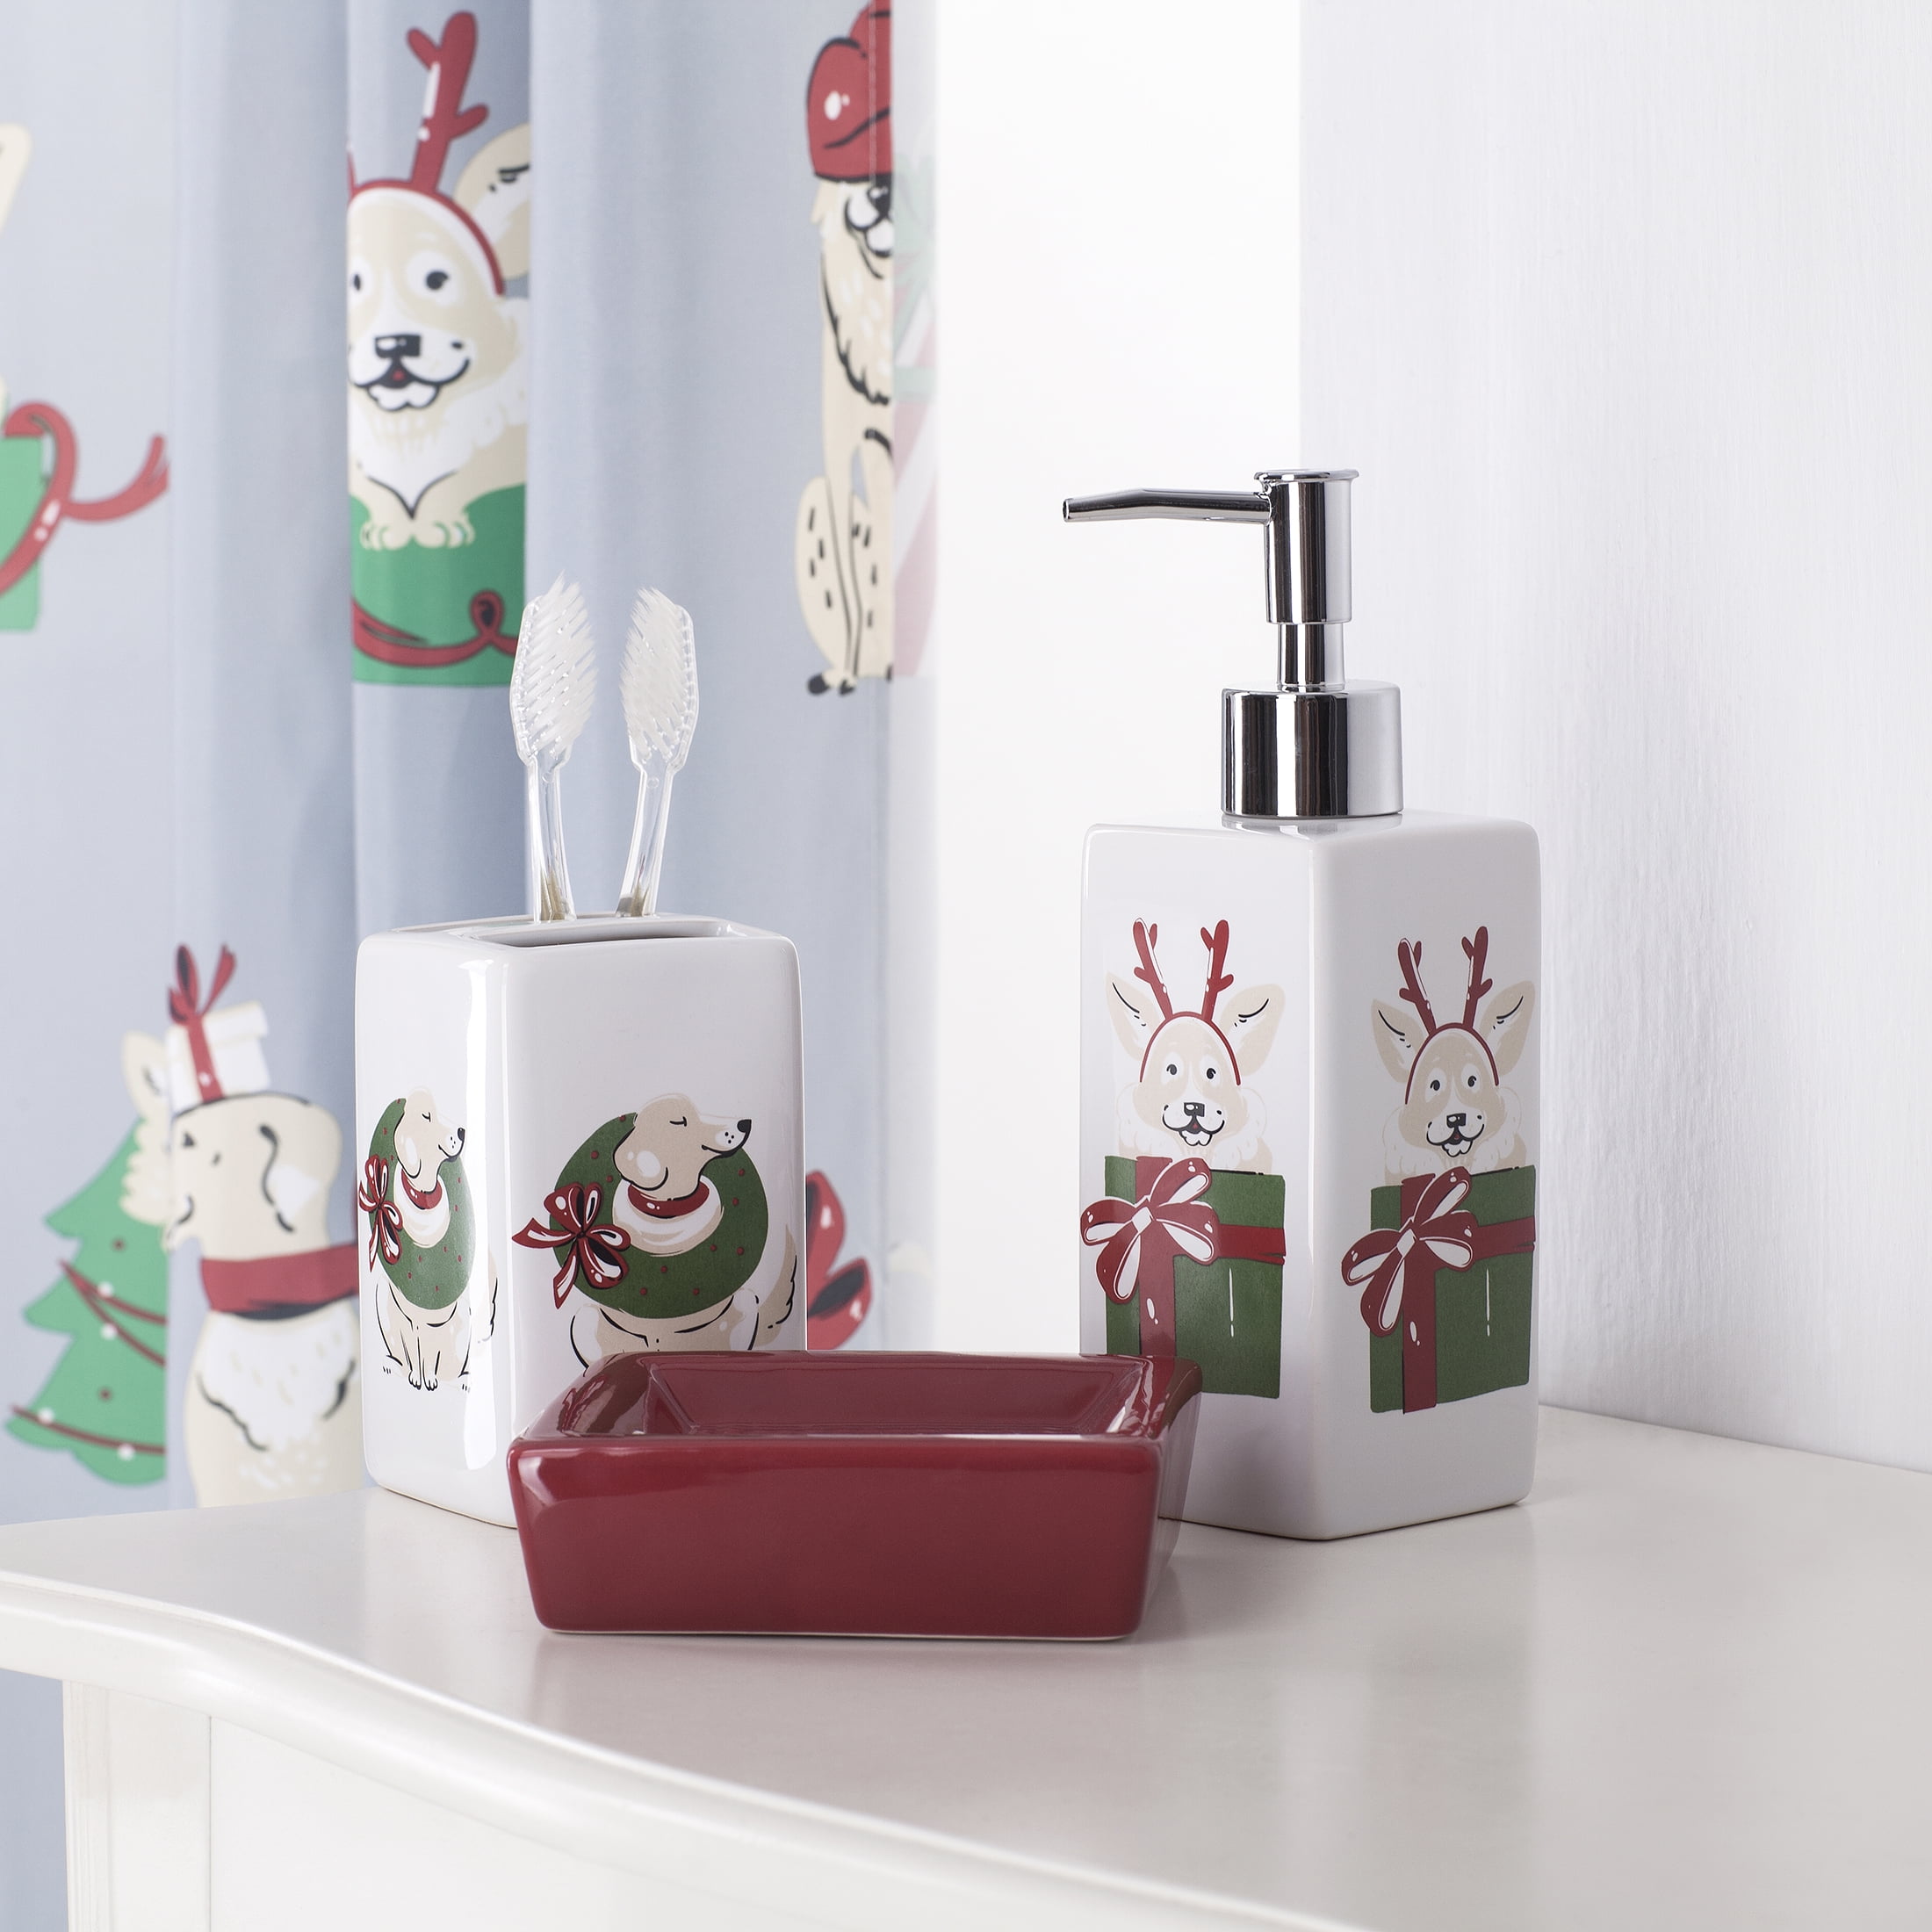 Vintage Ceramic…Milk Chocolate Color…Sink Set…Soap dish & Cup holder...NOS 